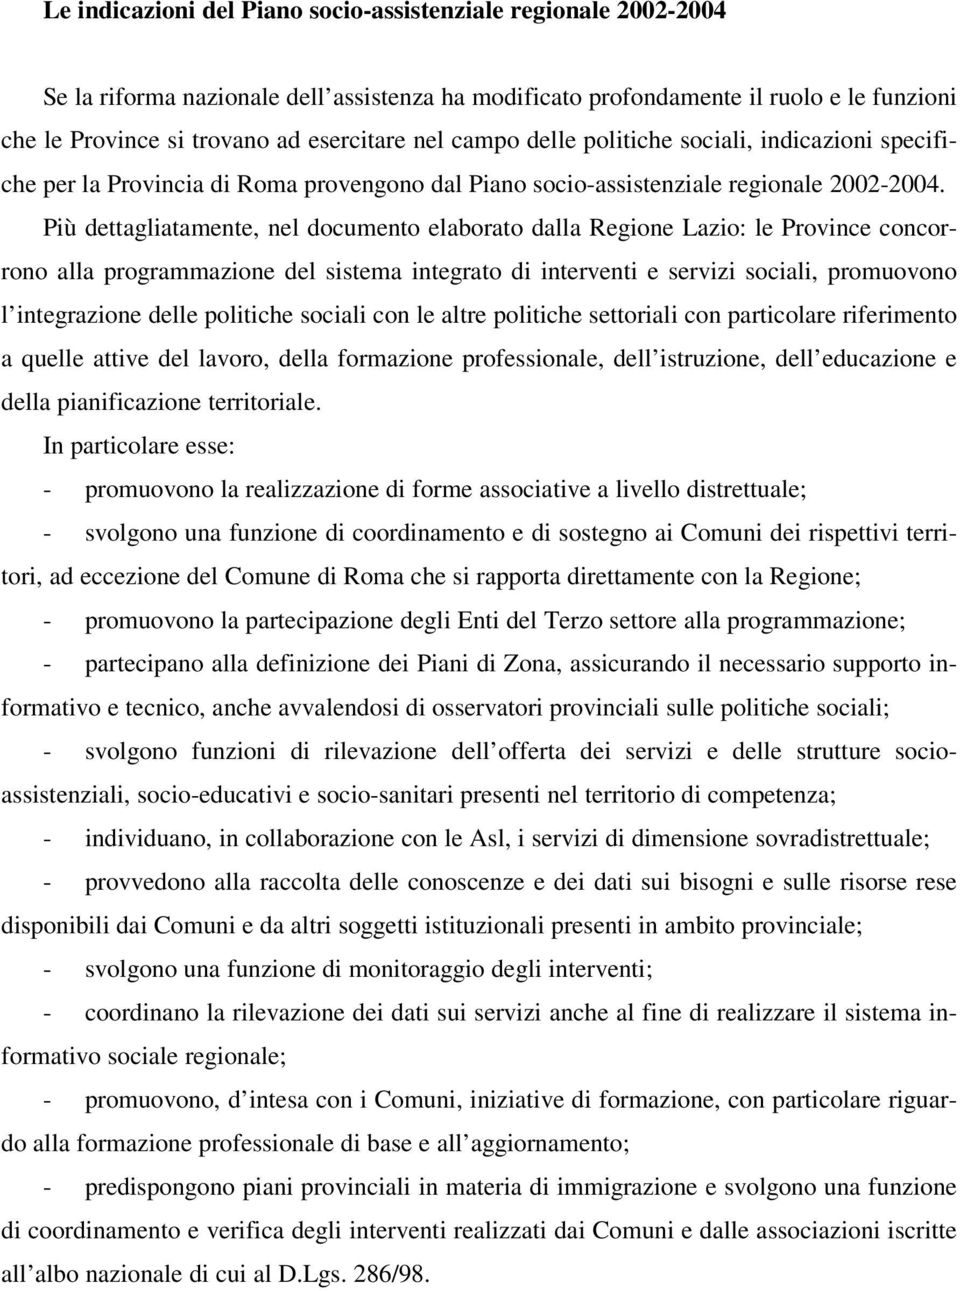 Più dettagliatamente, nel documento elaborato dalla Regione Lazio: le Province concorrono alla programmazione del sistema integrato di interventi e servizi sociali, promuovono l integrazione delle